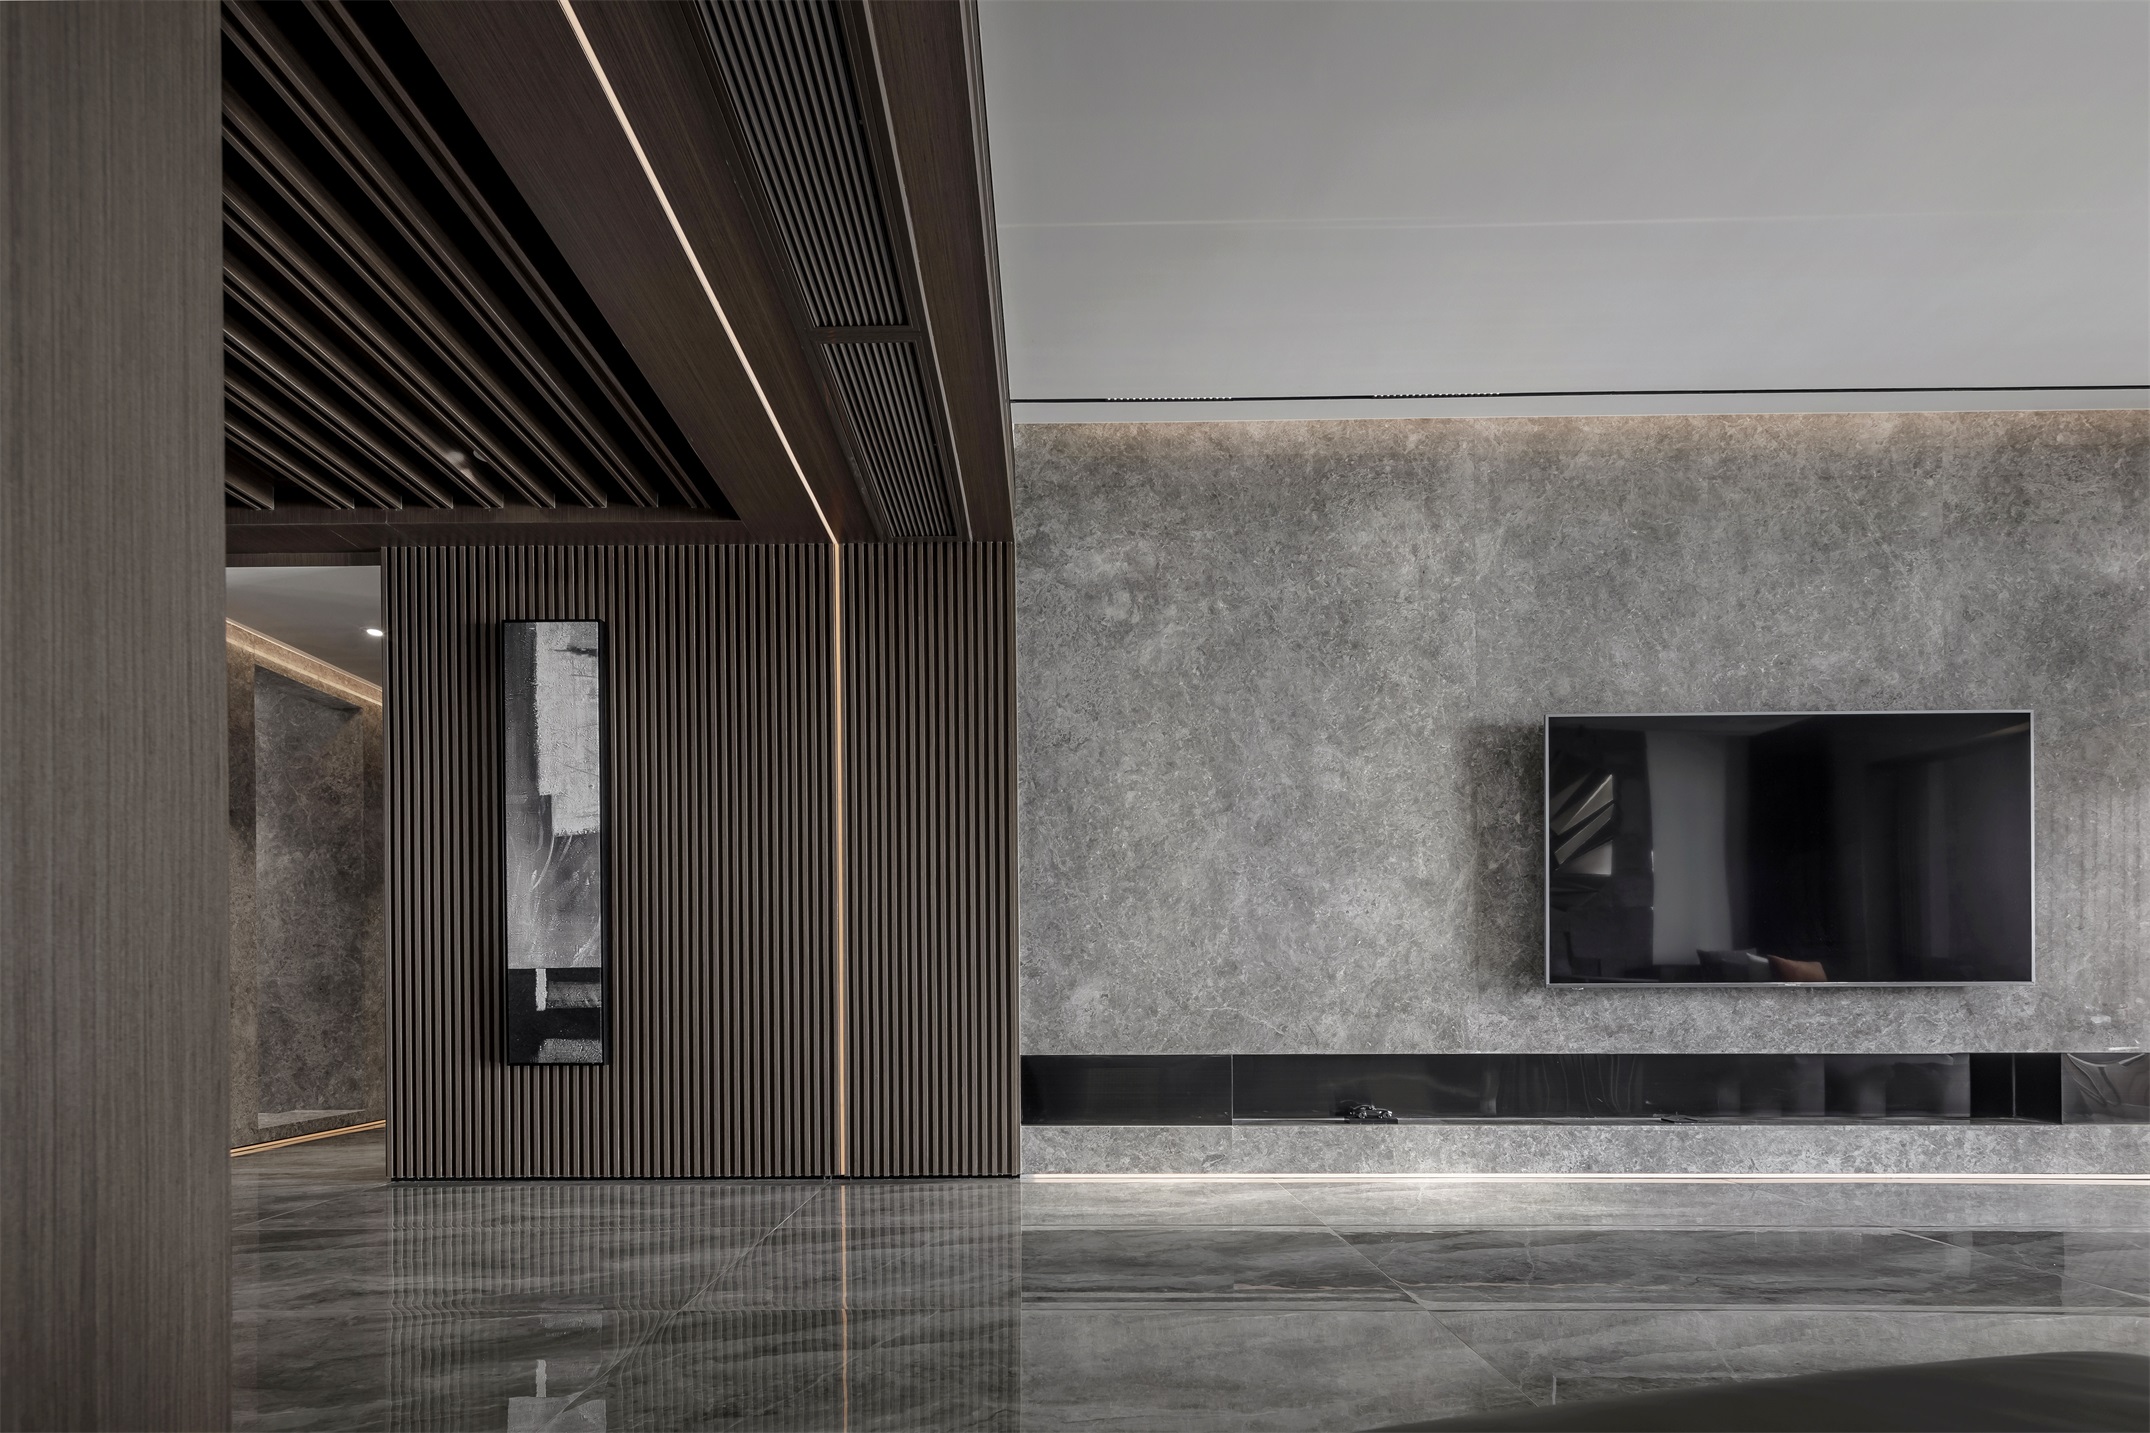 电视机背景墙采用灰色大理石铺设,体现了中国传统设计的整体观